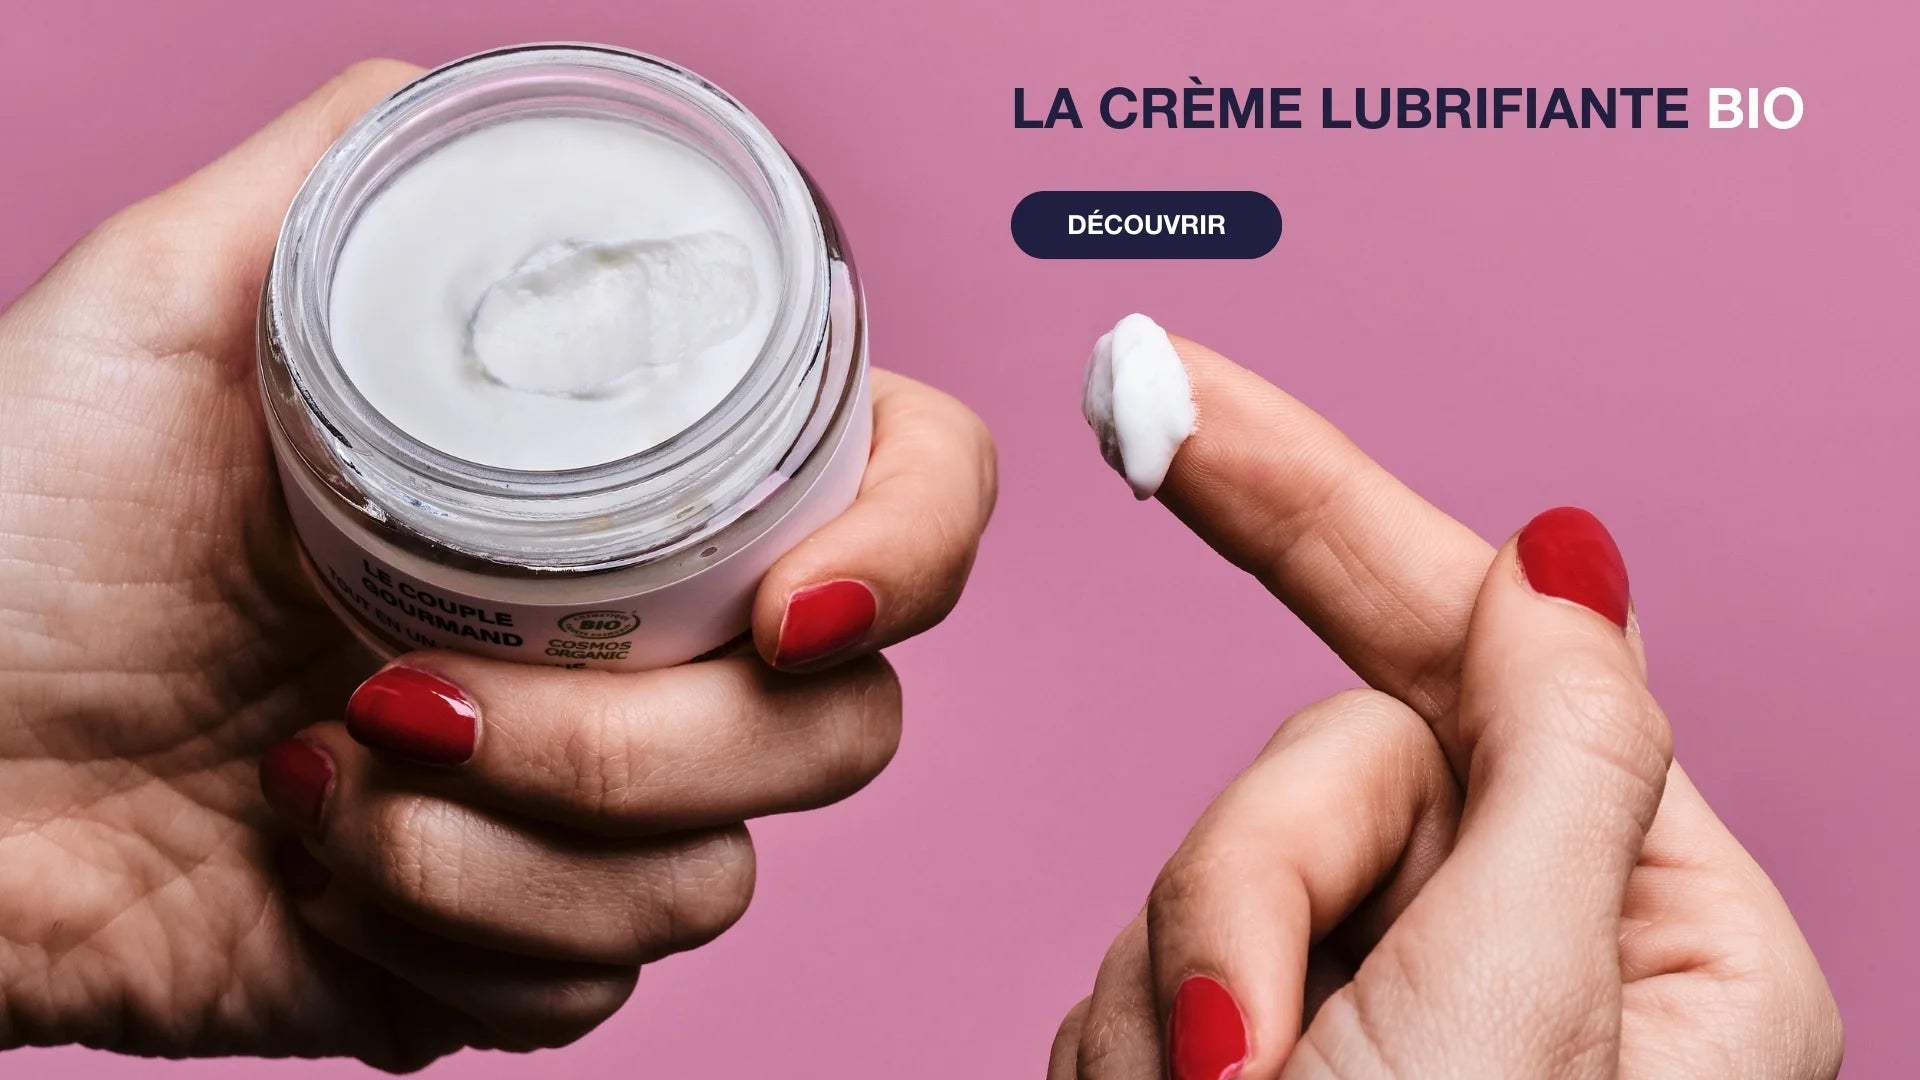 goliate lubrifiant intime naturel bio et sextoys marque française - education sexuelle